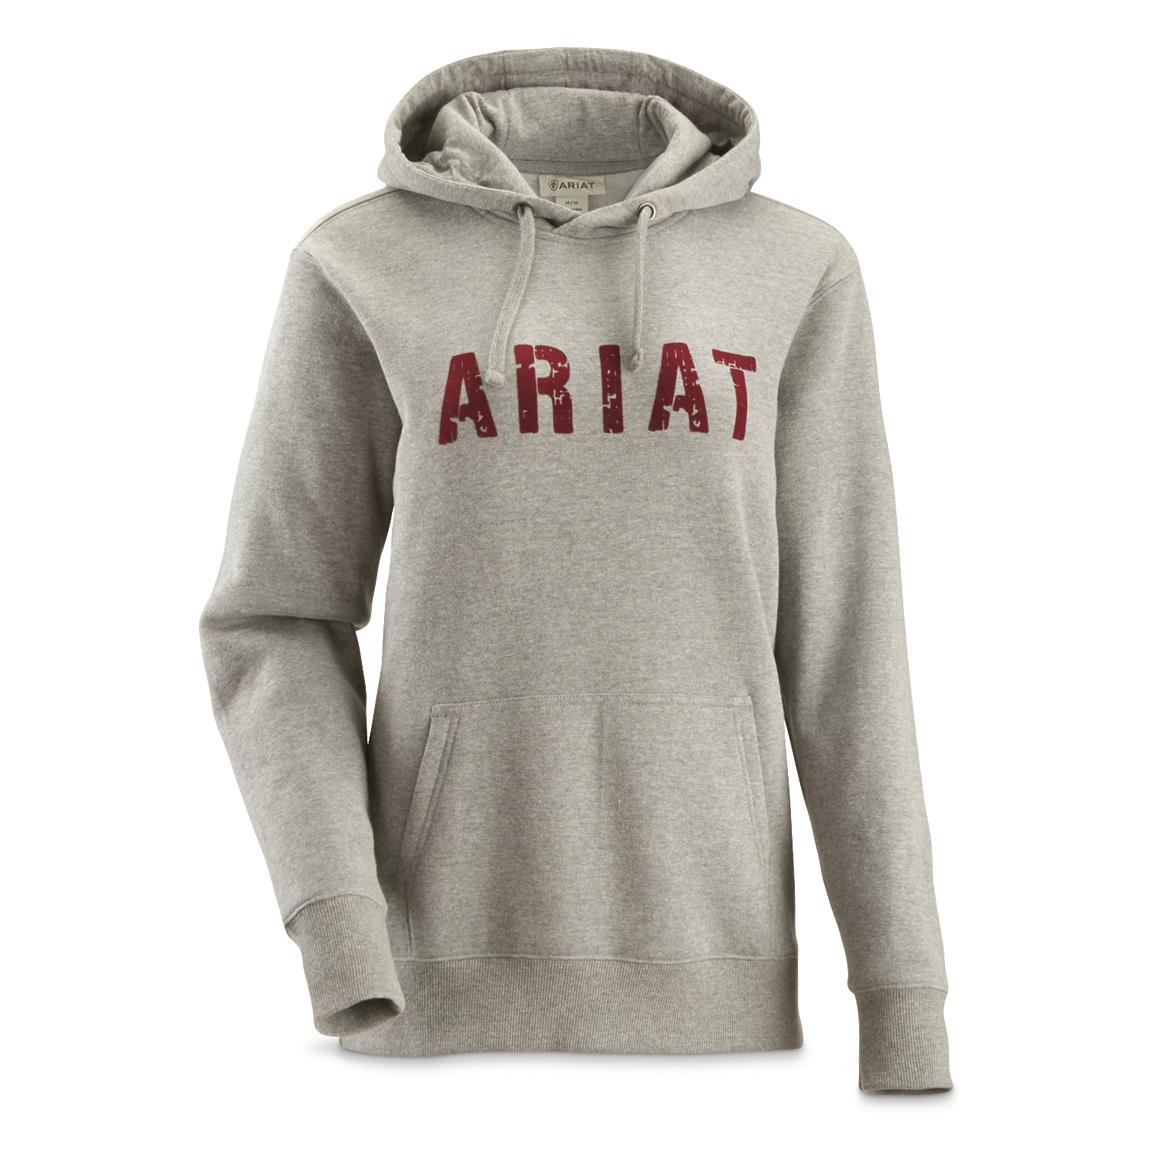 ariat sweatshirt womens